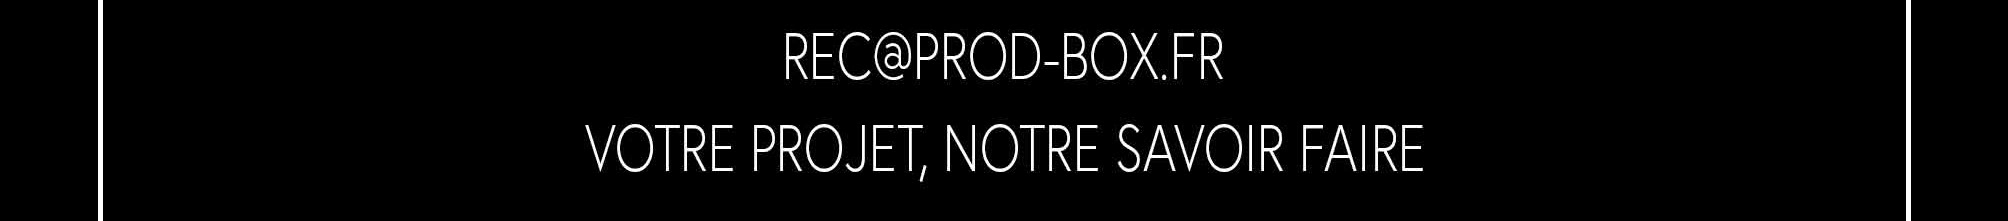 PROD BOX .'s profile banner